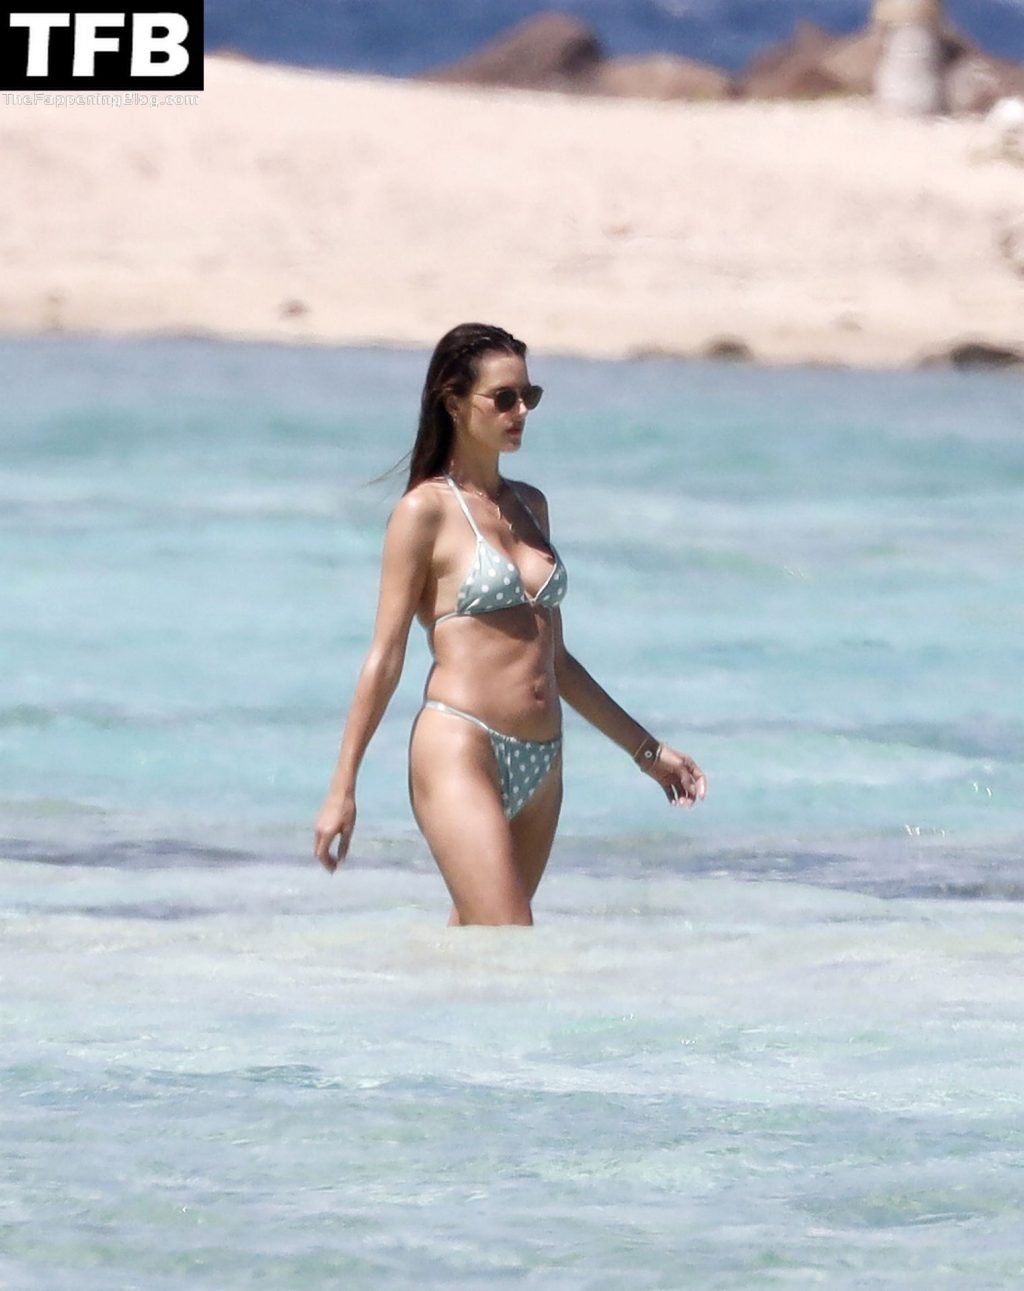 Alessandra Ambrosio Looks Hot in a Tiny Bikini (52 Photos)